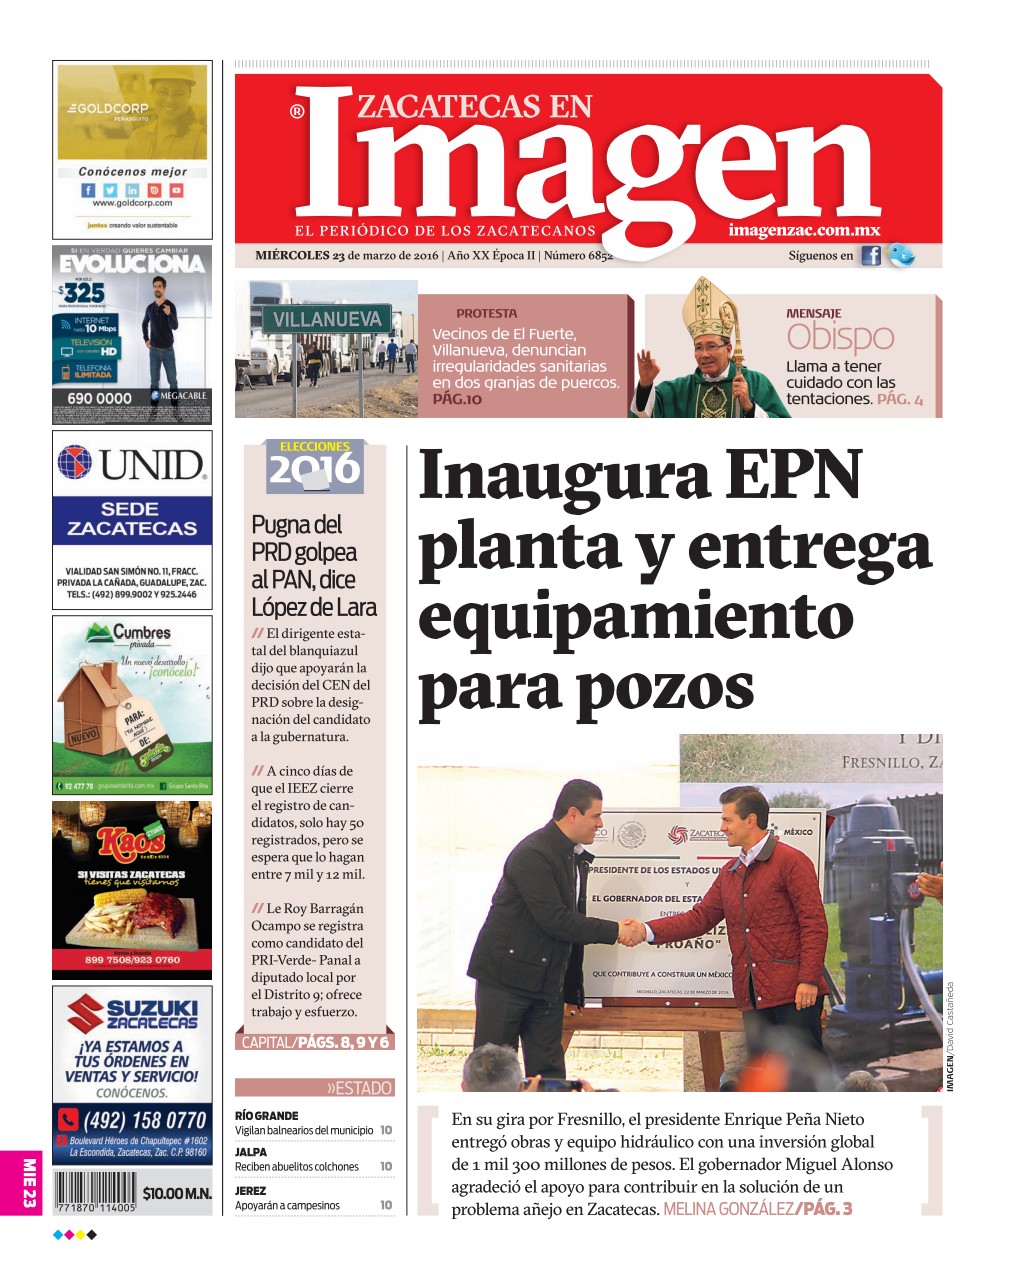 Imagen Zacatecas edición del 23 de Marzo 2016